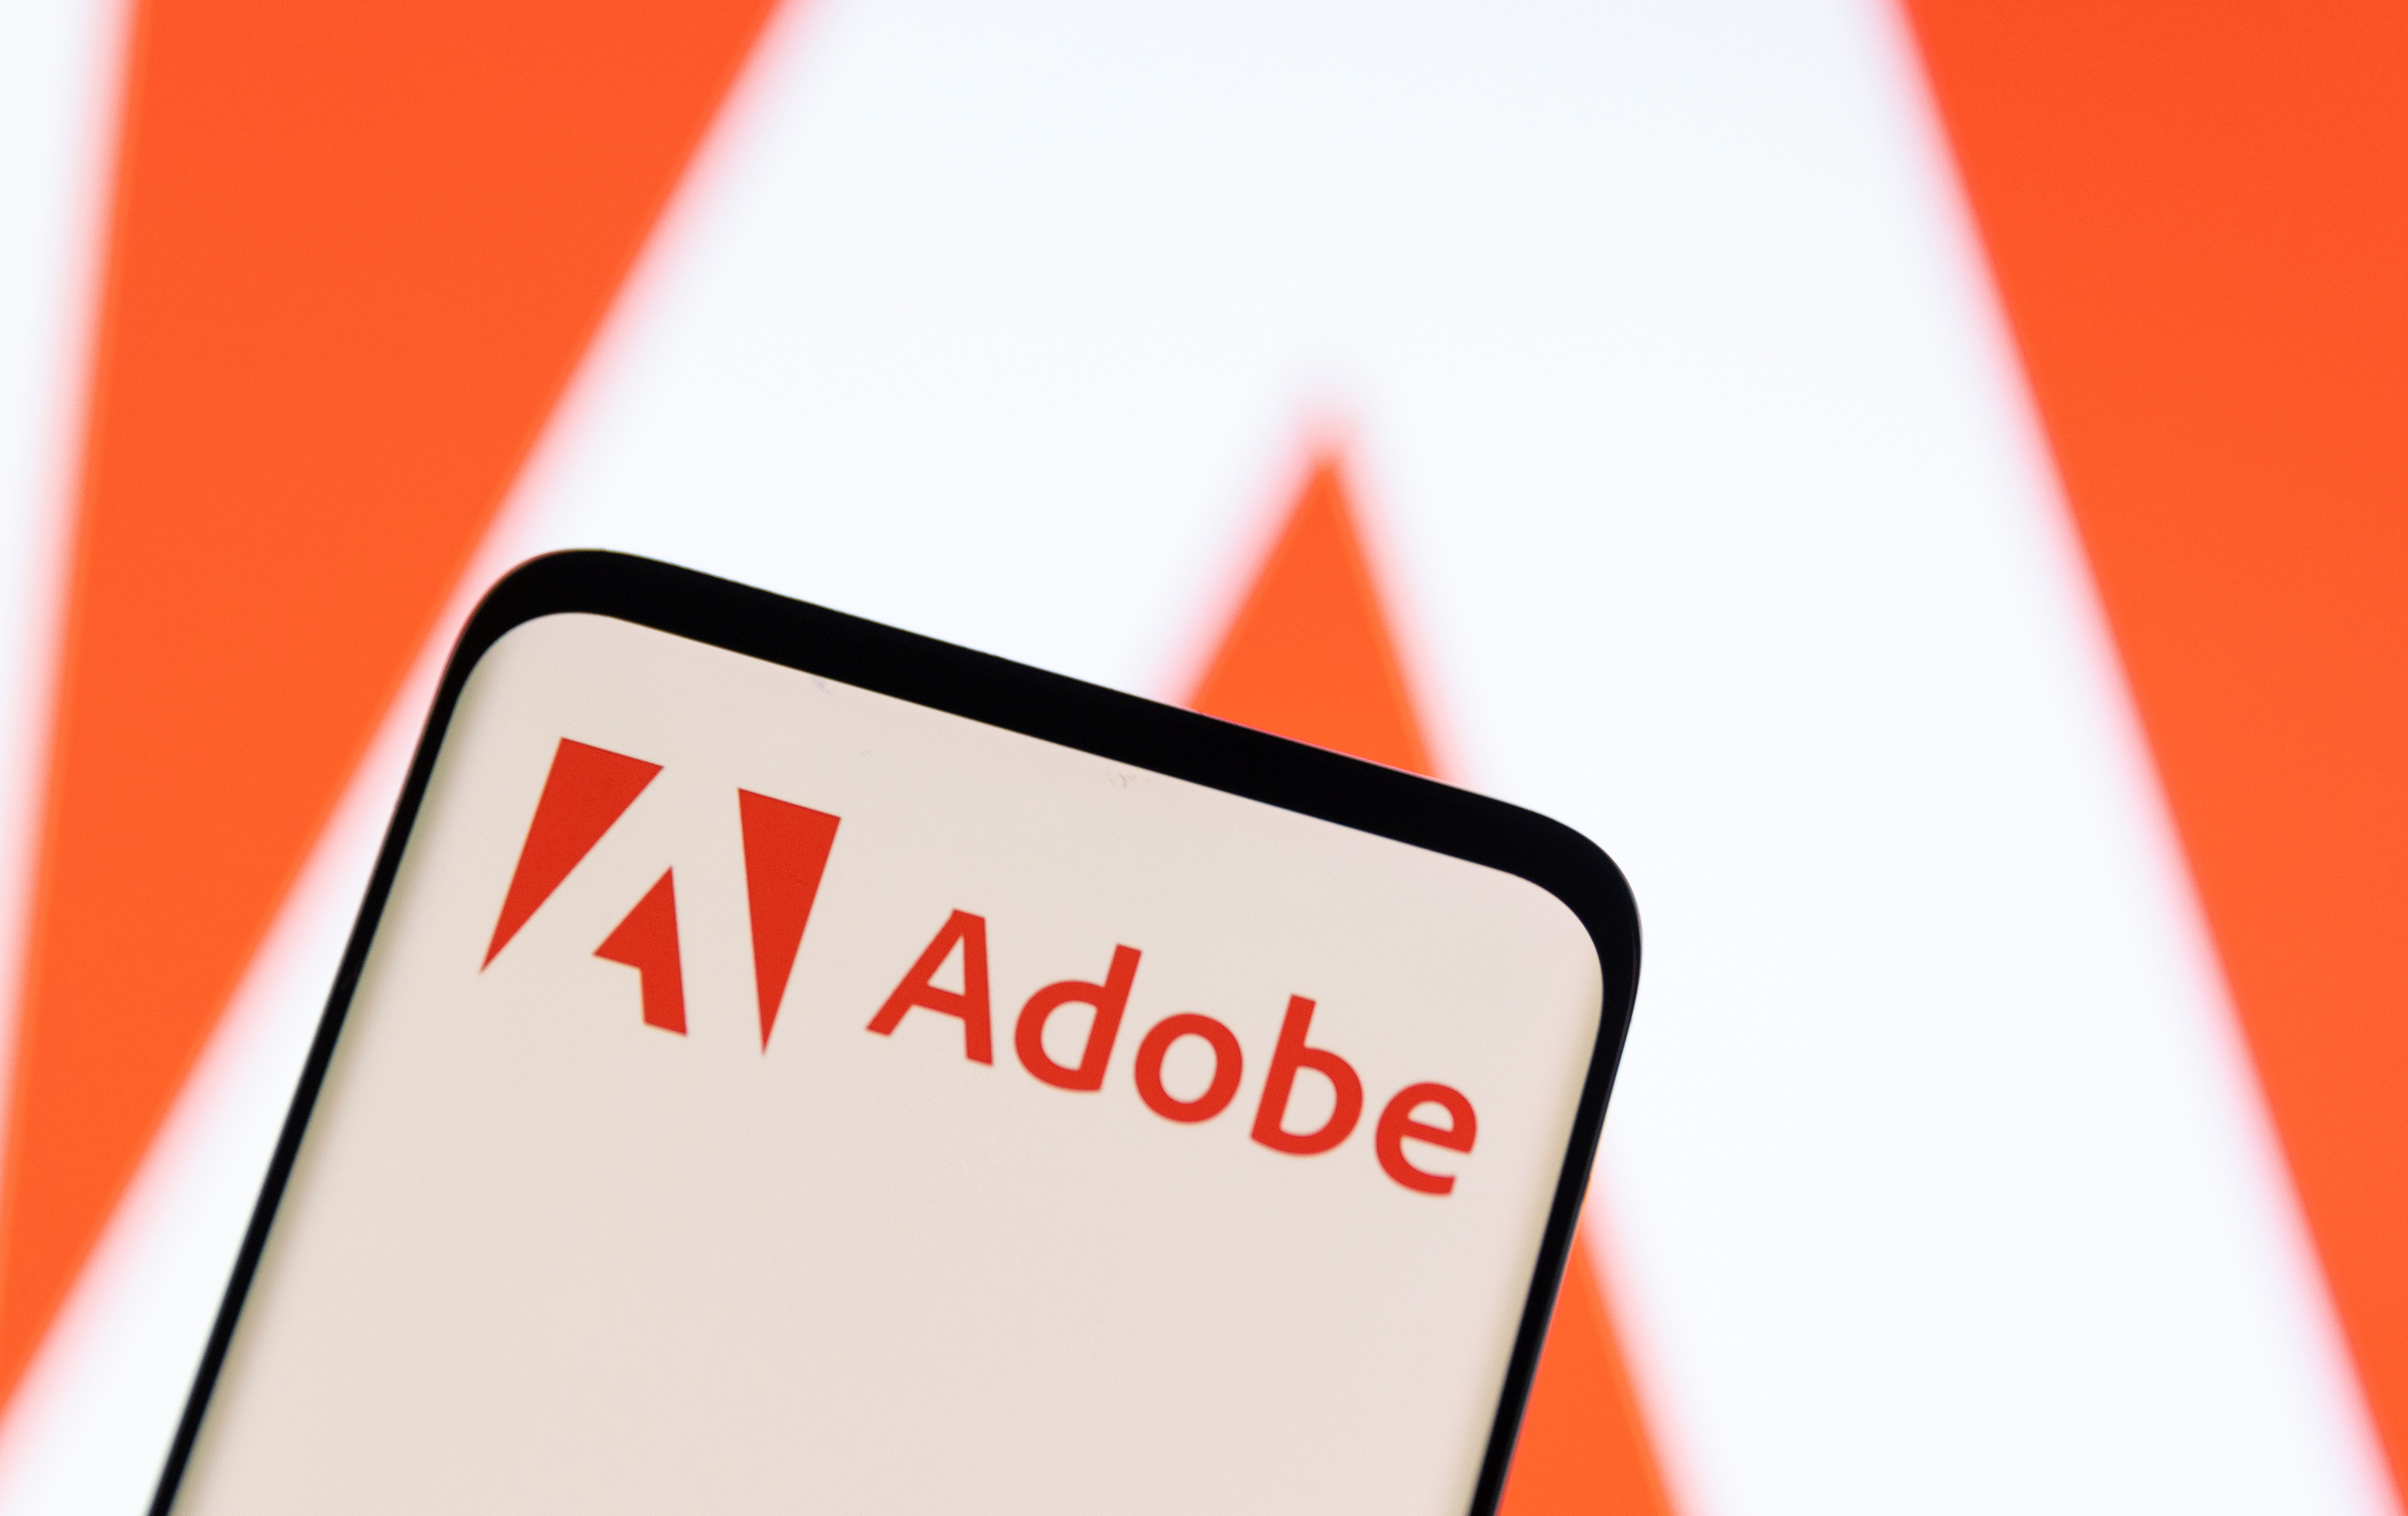 Illustration shows Adobe logo